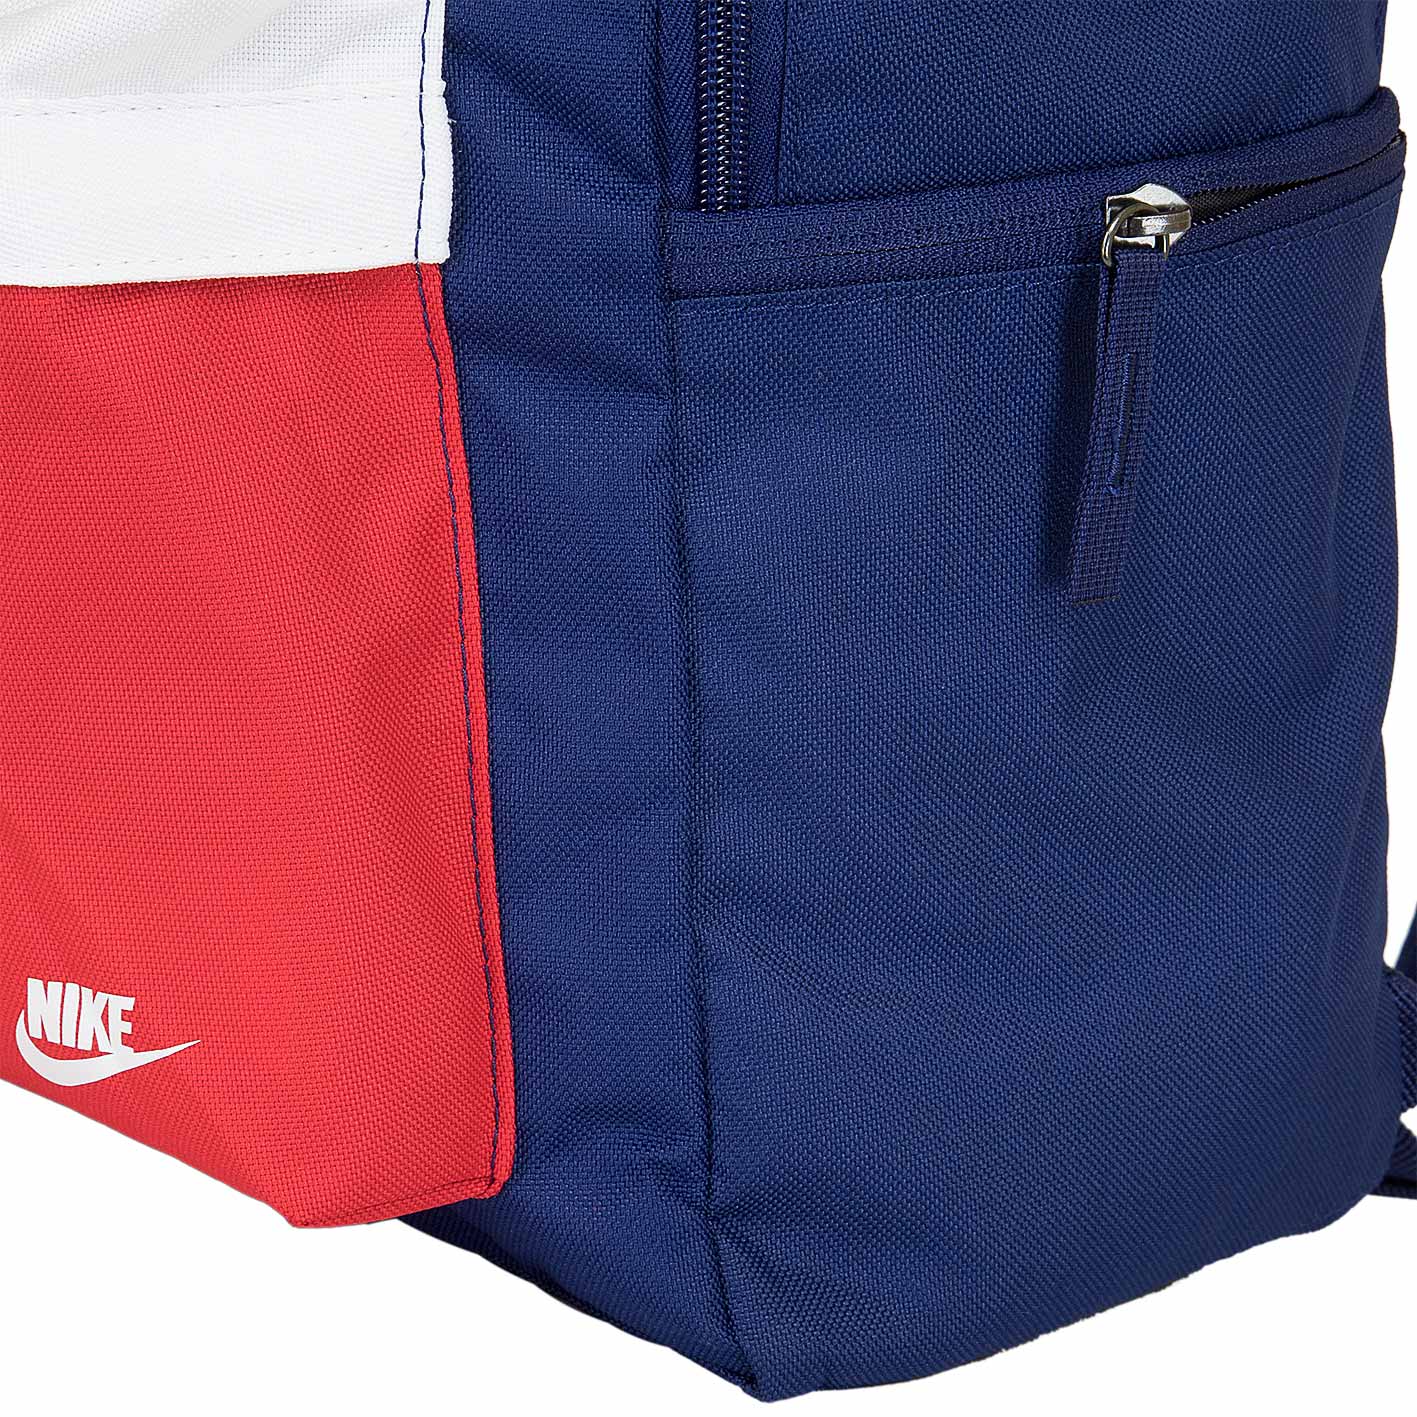 ☆ Nike Rucksack Heritage 2.0 Graphic blau/weiß/rot - hier bestellen!